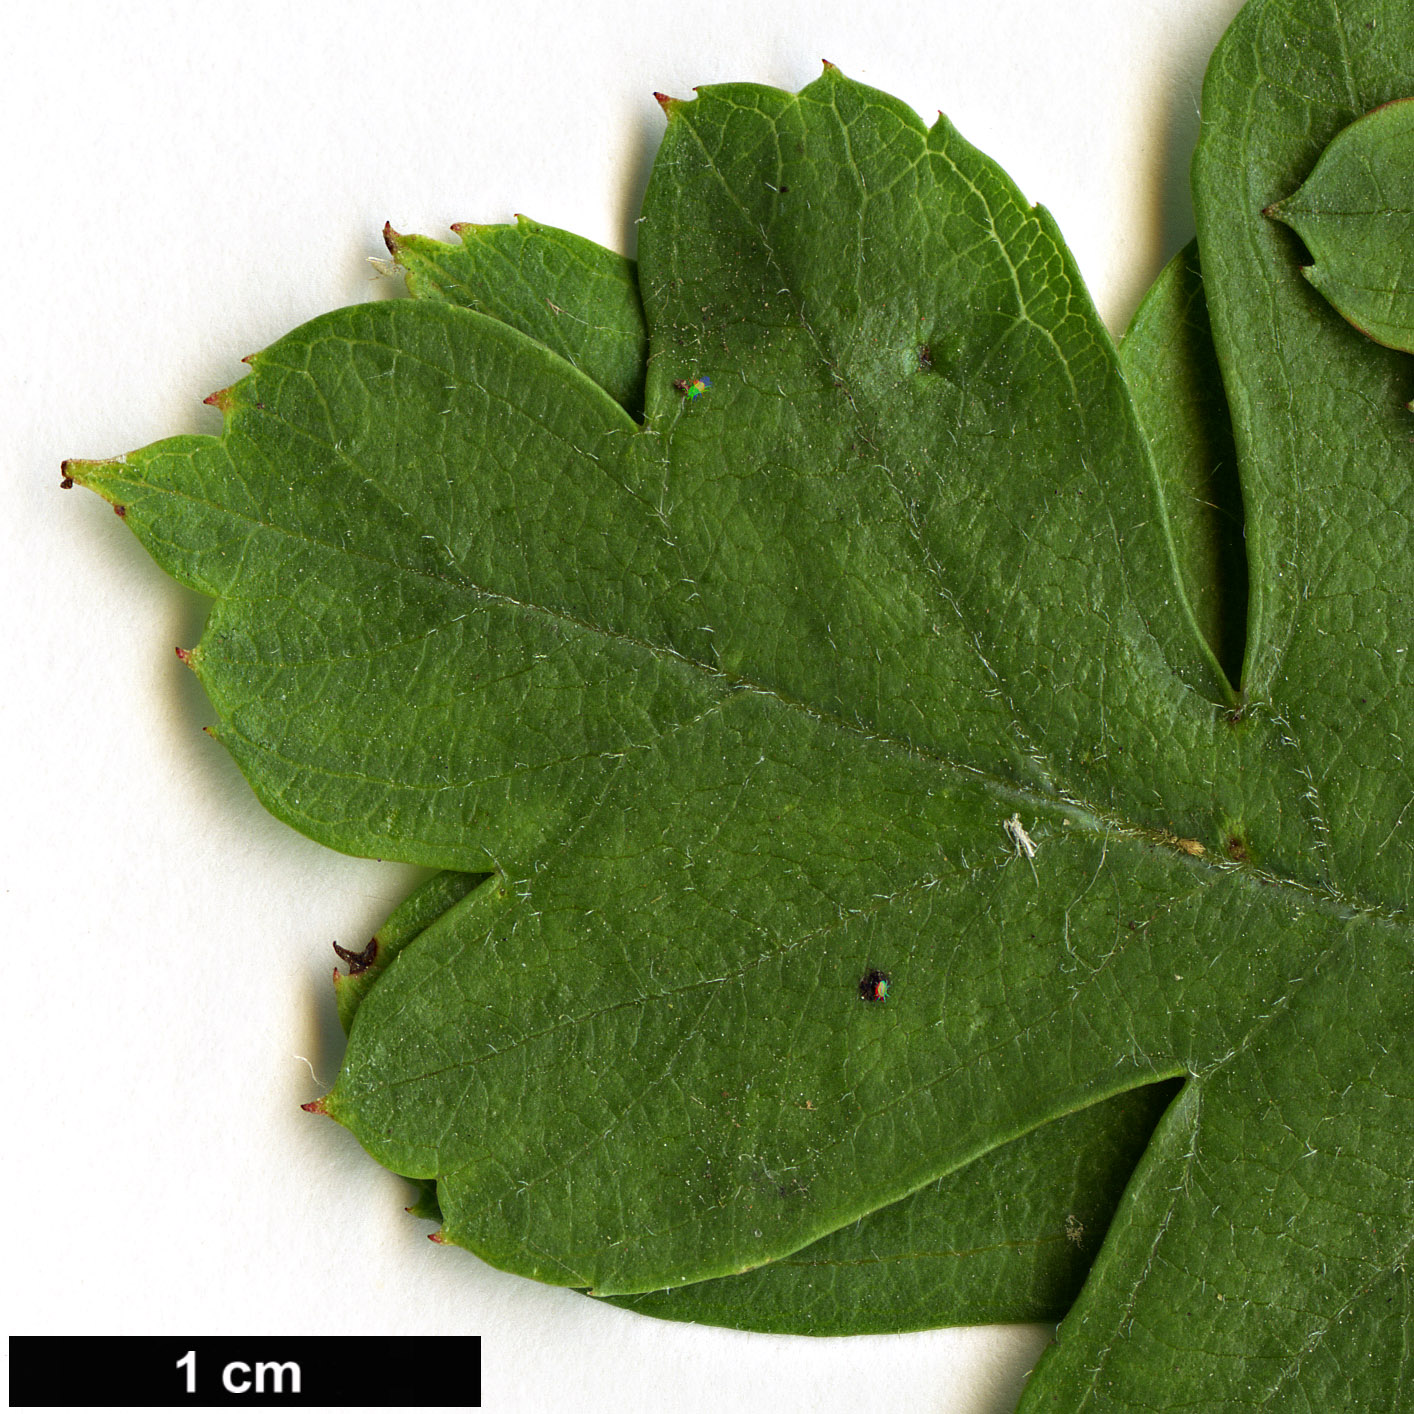 High resolution image: Family: Rosaceae - Genus: Crataegus - Taxon: ×calycina (C.laevigata × C.rhipidophylla)